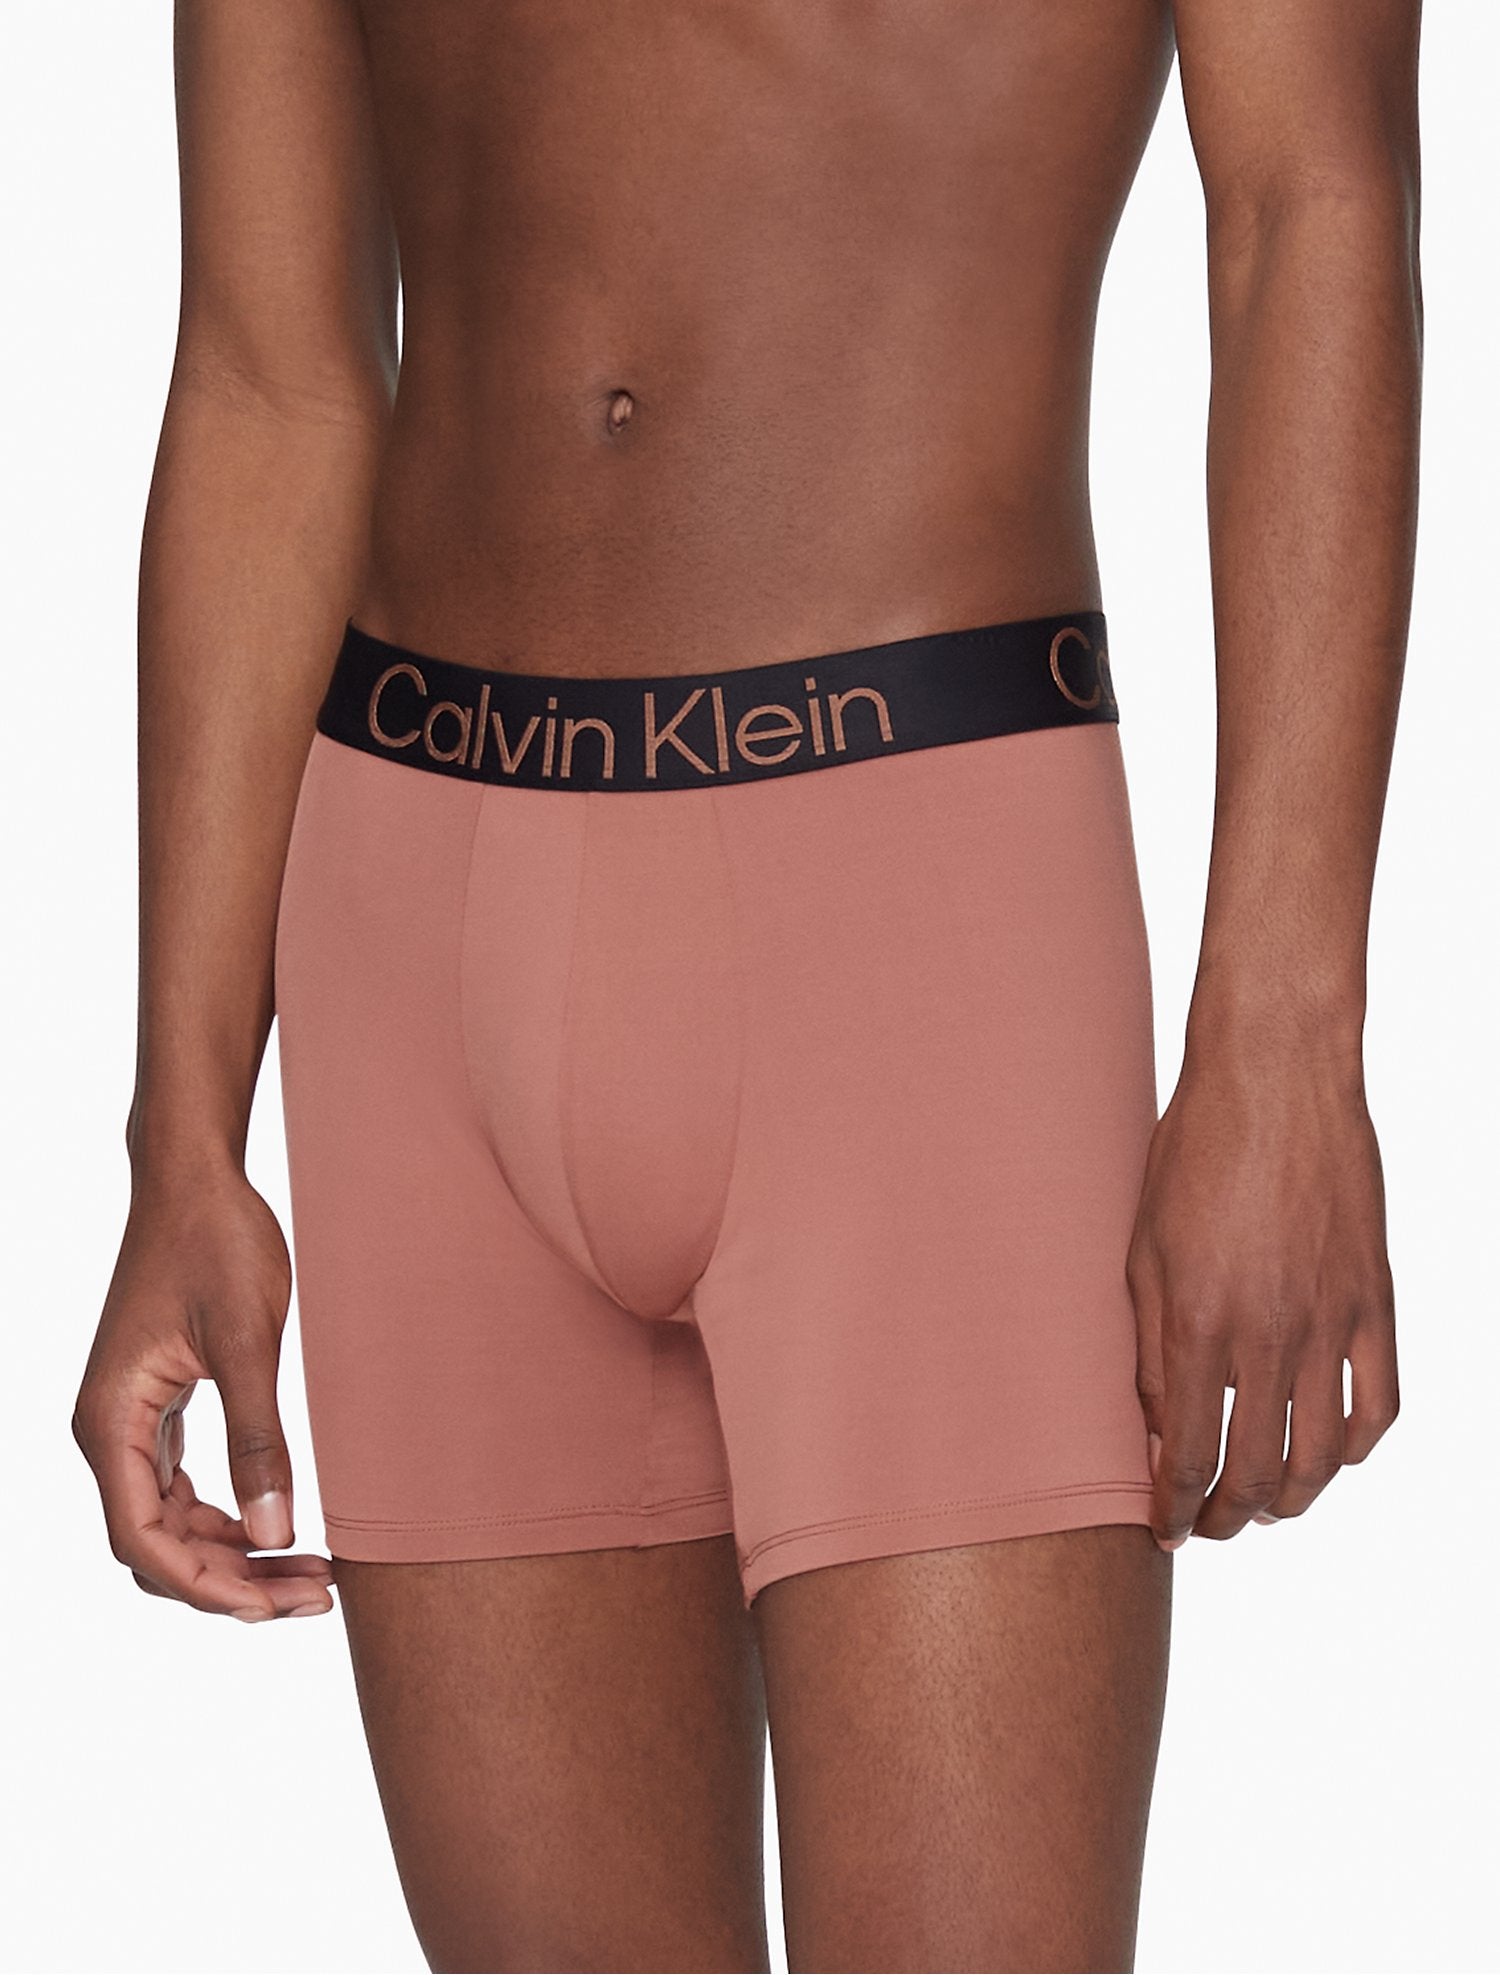 Calvin Klein Dark Brown underwear – 85 86 eightyfiveightysix